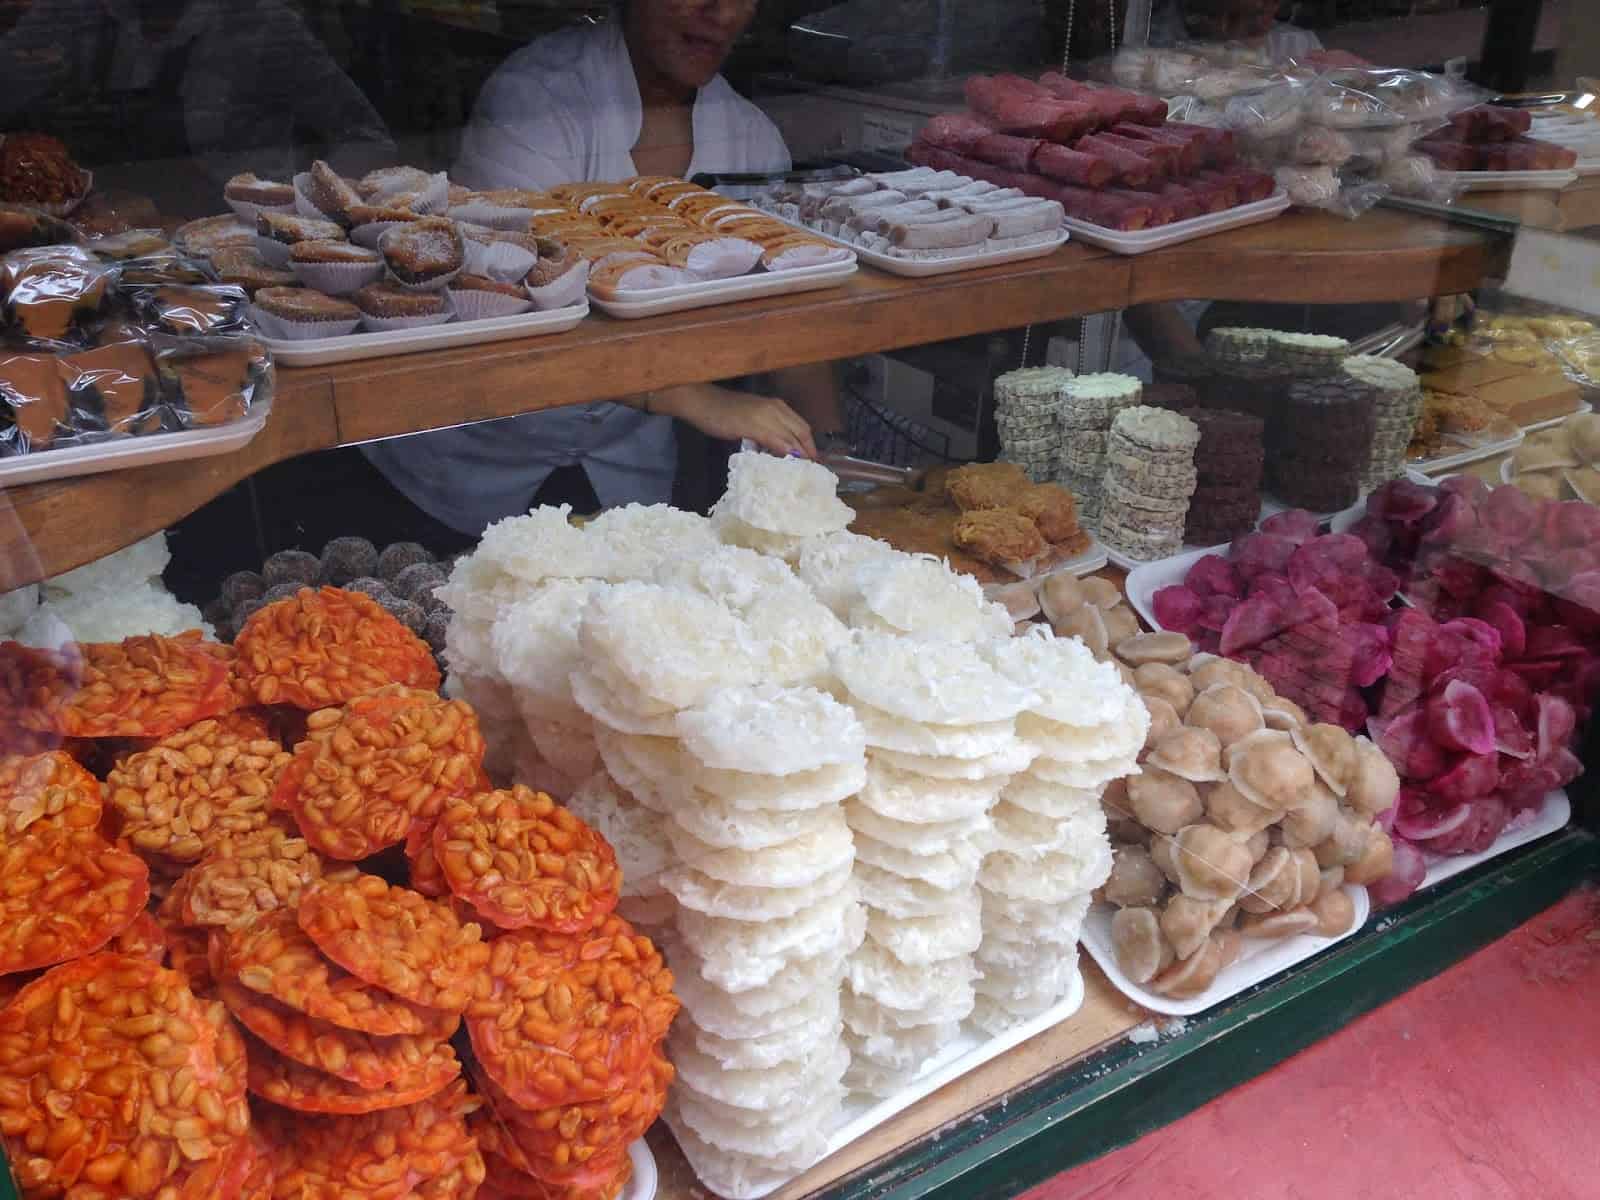 Sweets at La Puerta Falsa in La Candelaria, Bogotá, Colombia